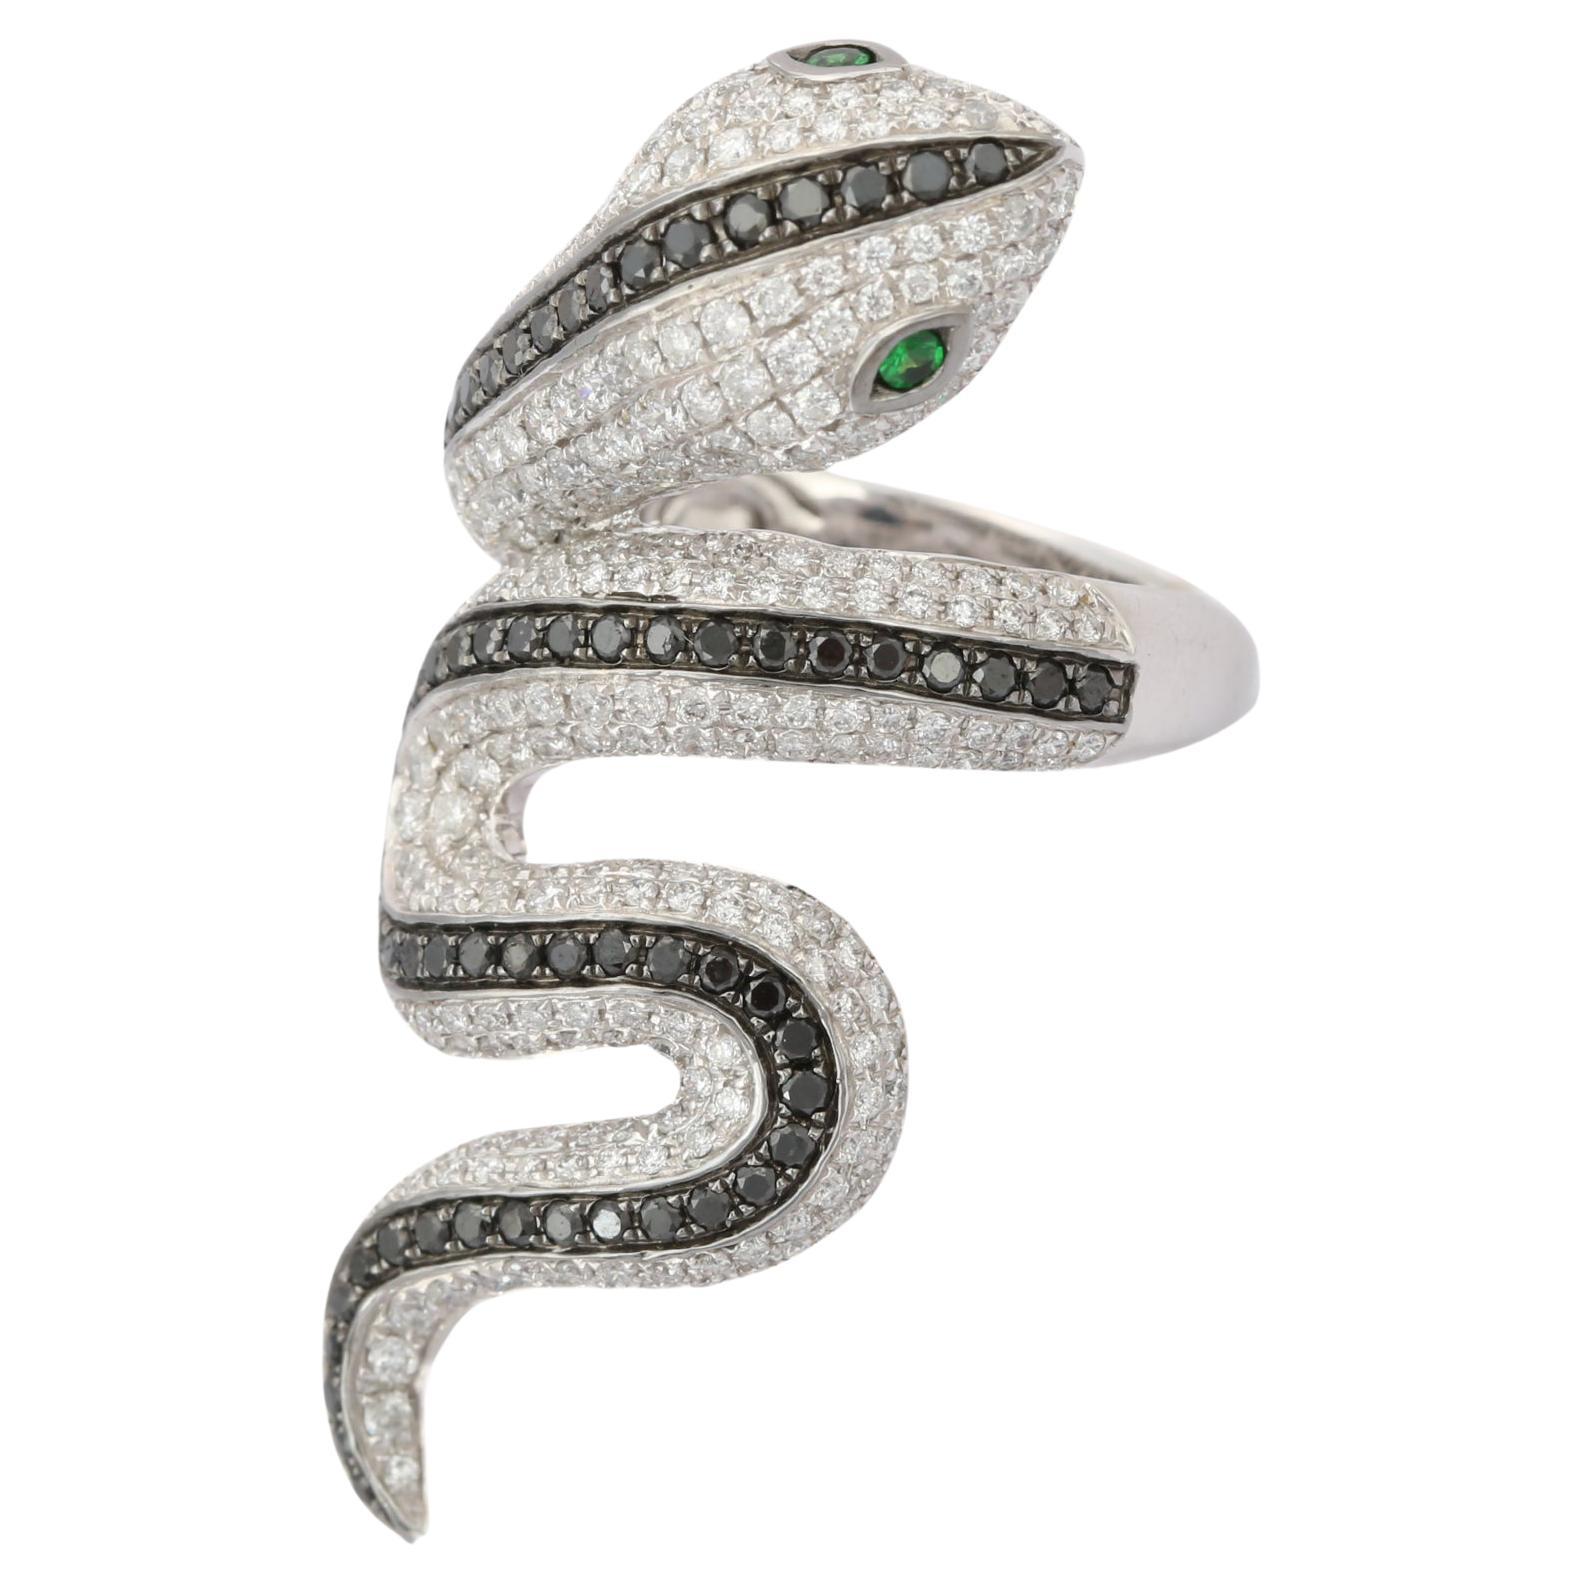 For Sale:  Tsavorite Eye and Diamond Snake Coil Ring in 18k Solid White Gold